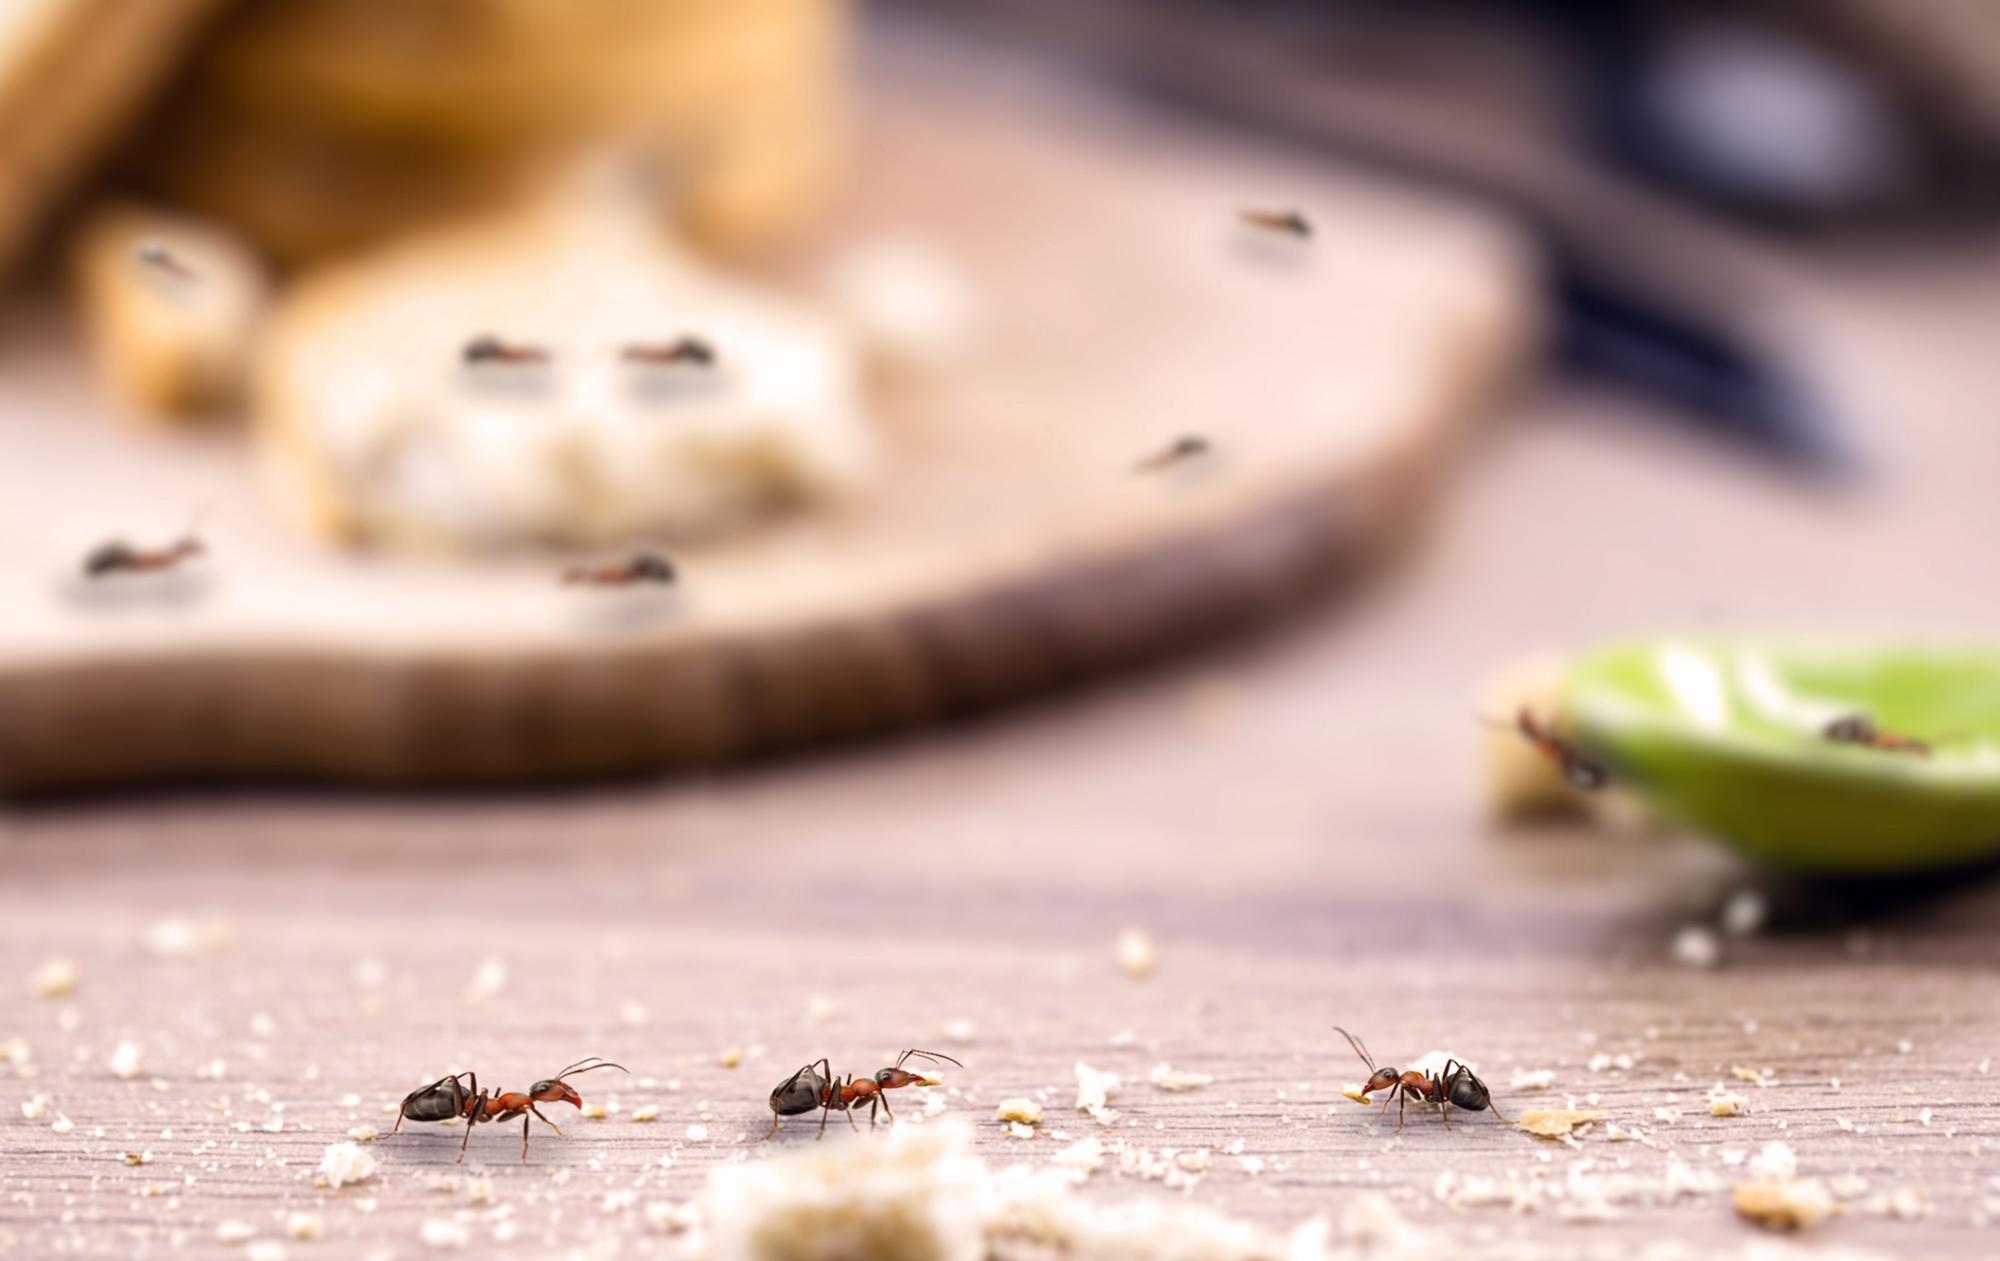 Existen trucos caseros para acabar con las hormigas.